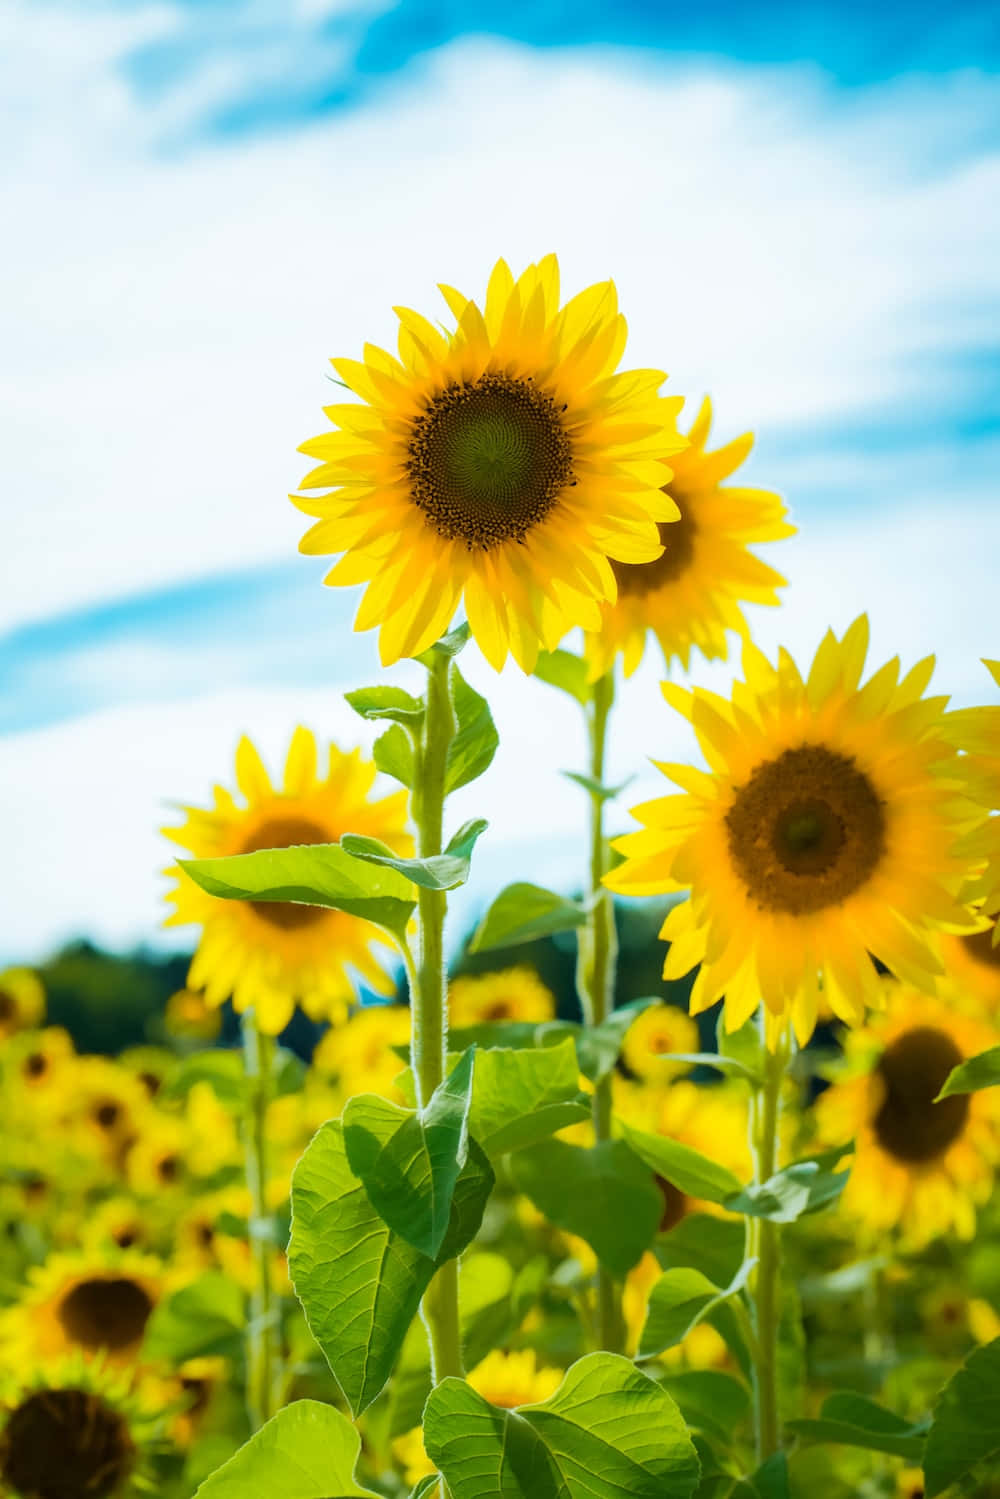 Einefröhliche Sonnenblume Verbreitet Freude Und Sonnenschein In Einem Lebendigen Garten.